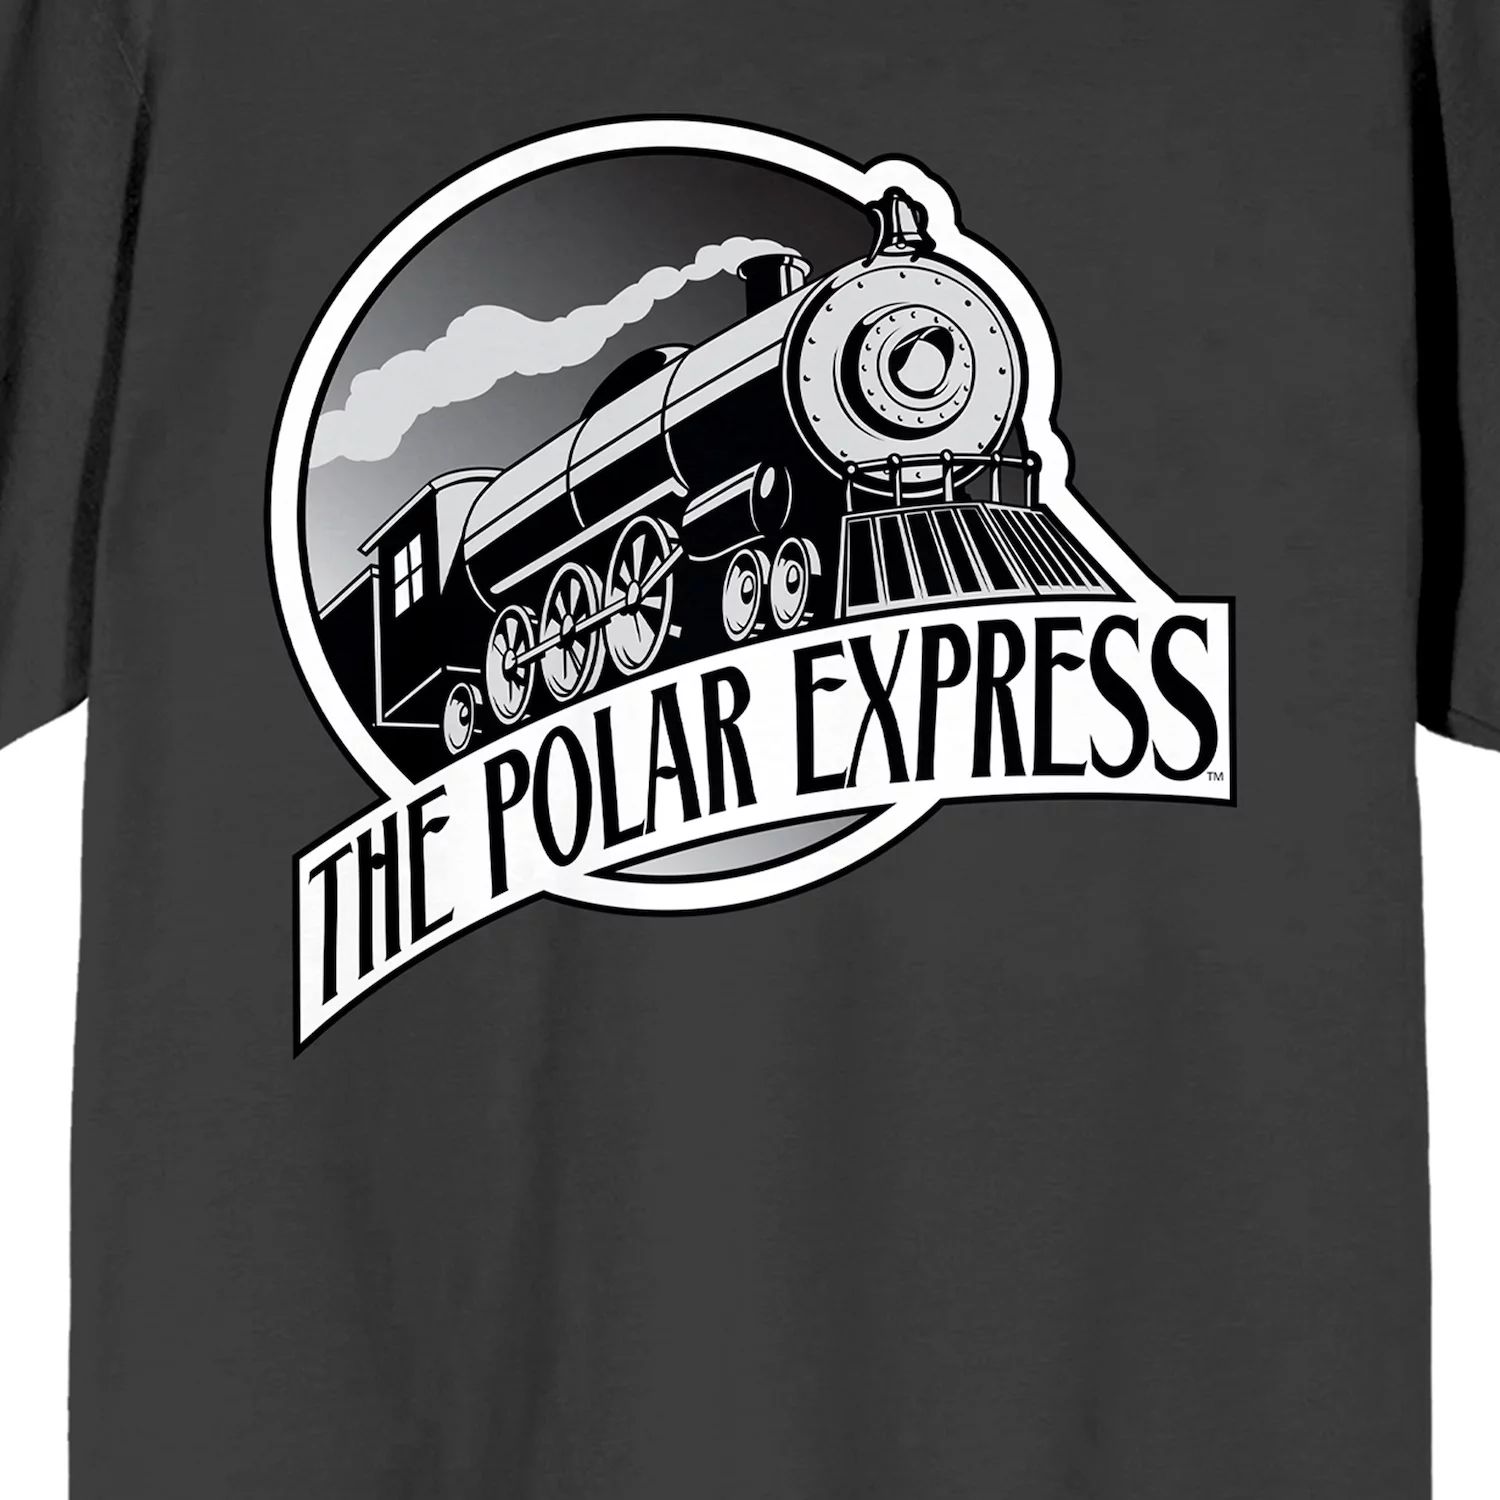 мужская футболка polar express santas sleigh licensed character Мужская футболка с логотипом Polar Express Train Licensed Character